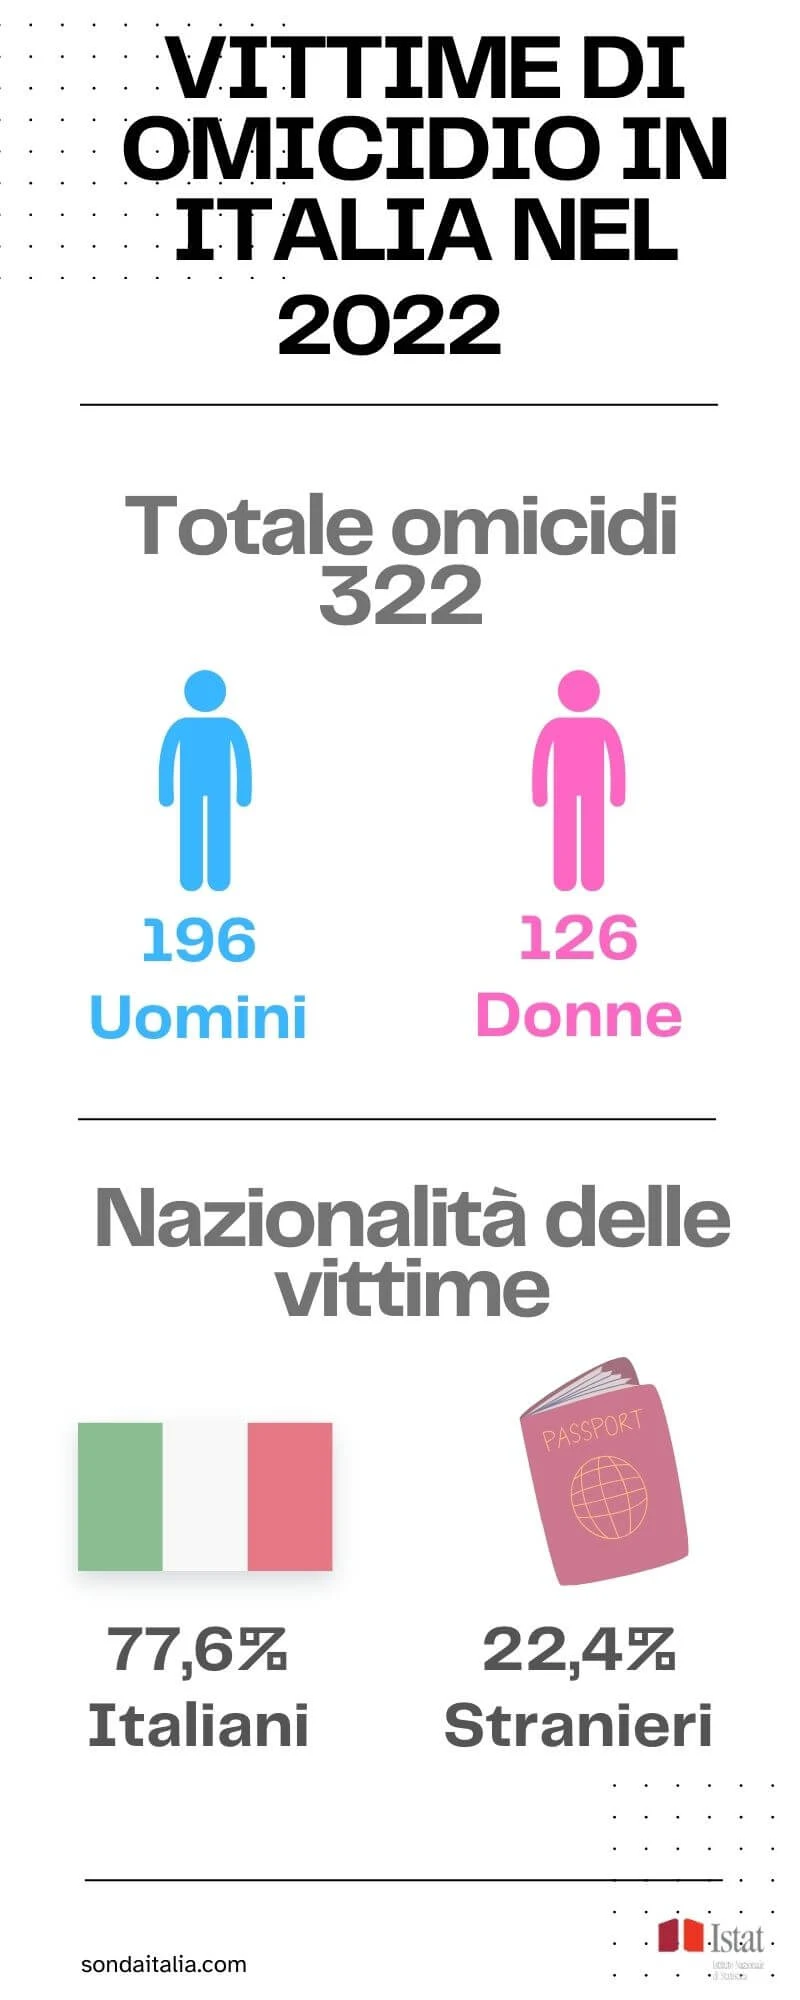 Vittime in italia di omicidio dati Istat nel 2022.